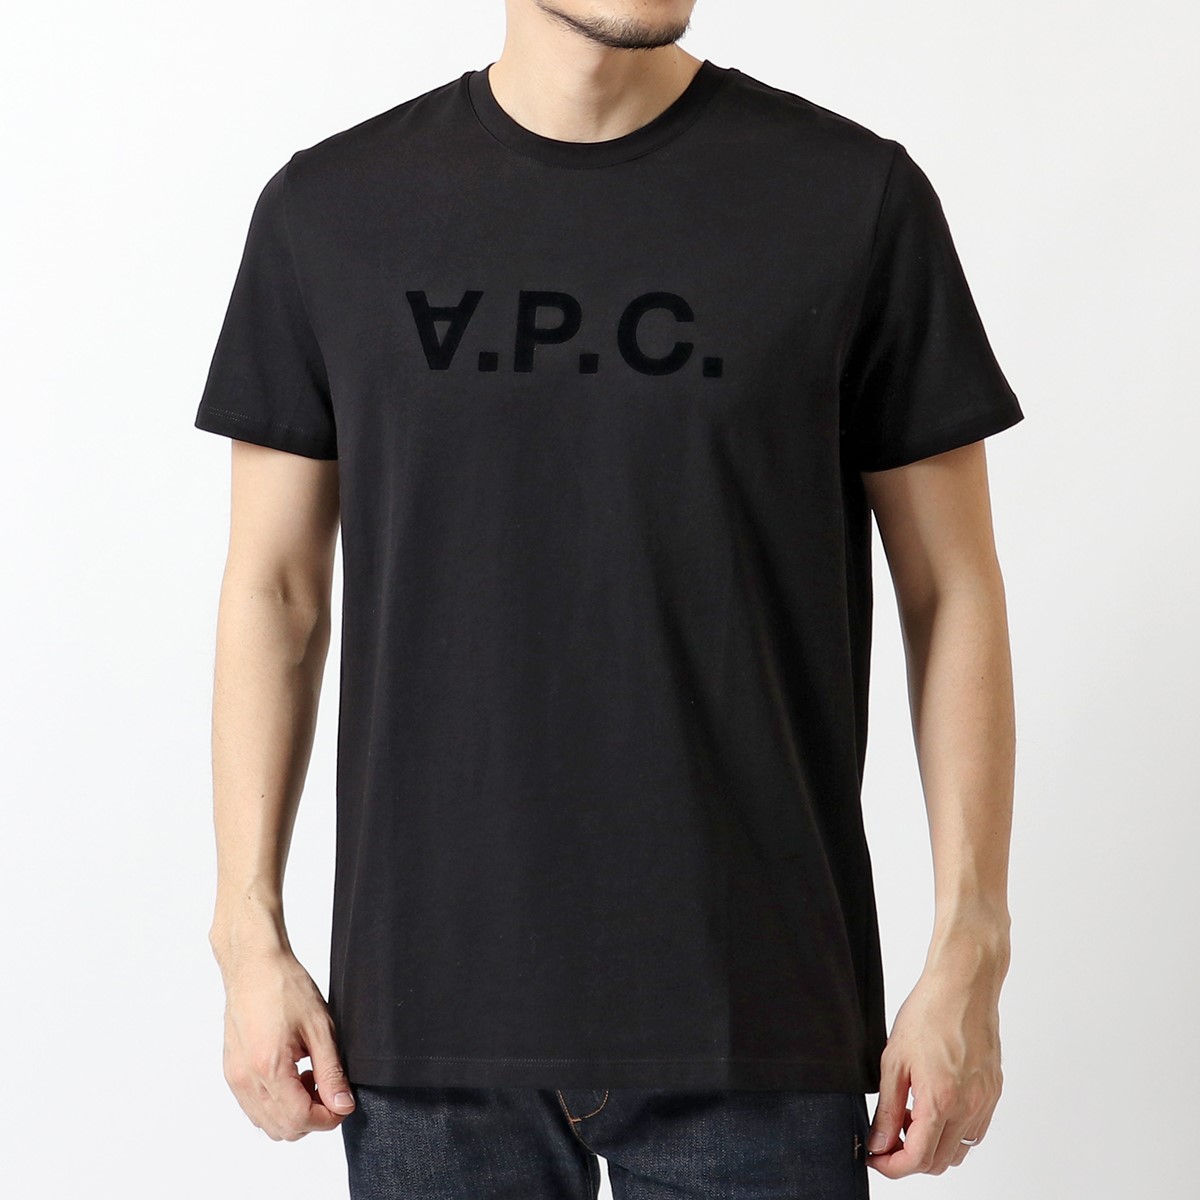 APC A.P.C. アーペーセー COBQX H26943 VPCTシャツ クルーネック 半袖 Tシャツ カットソー ロゴT LZZ/NOIR  メンズ | インポートセレクト musee